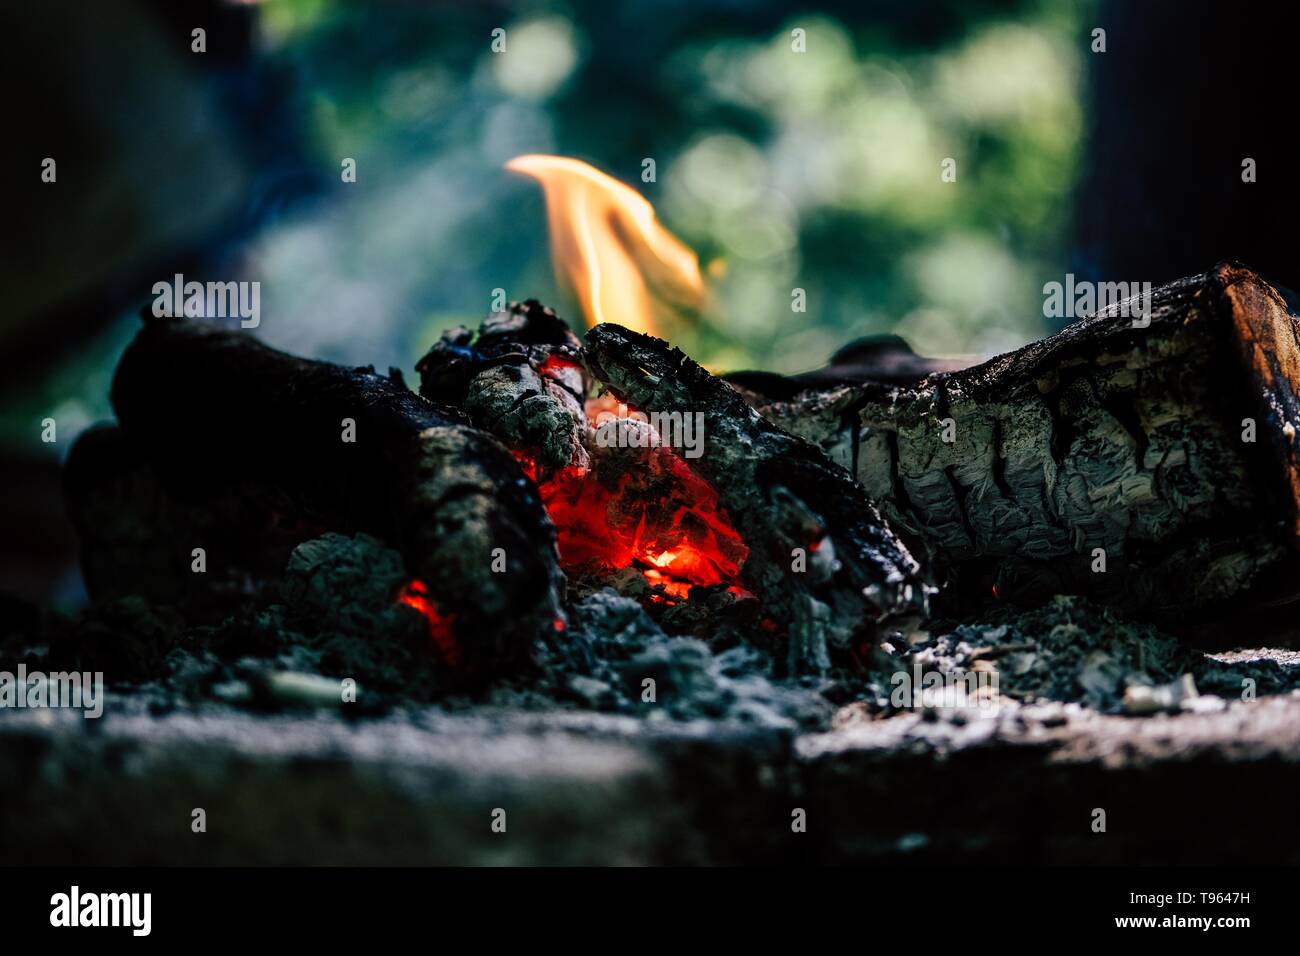 Closeup of burning logs indoors Stock Photo